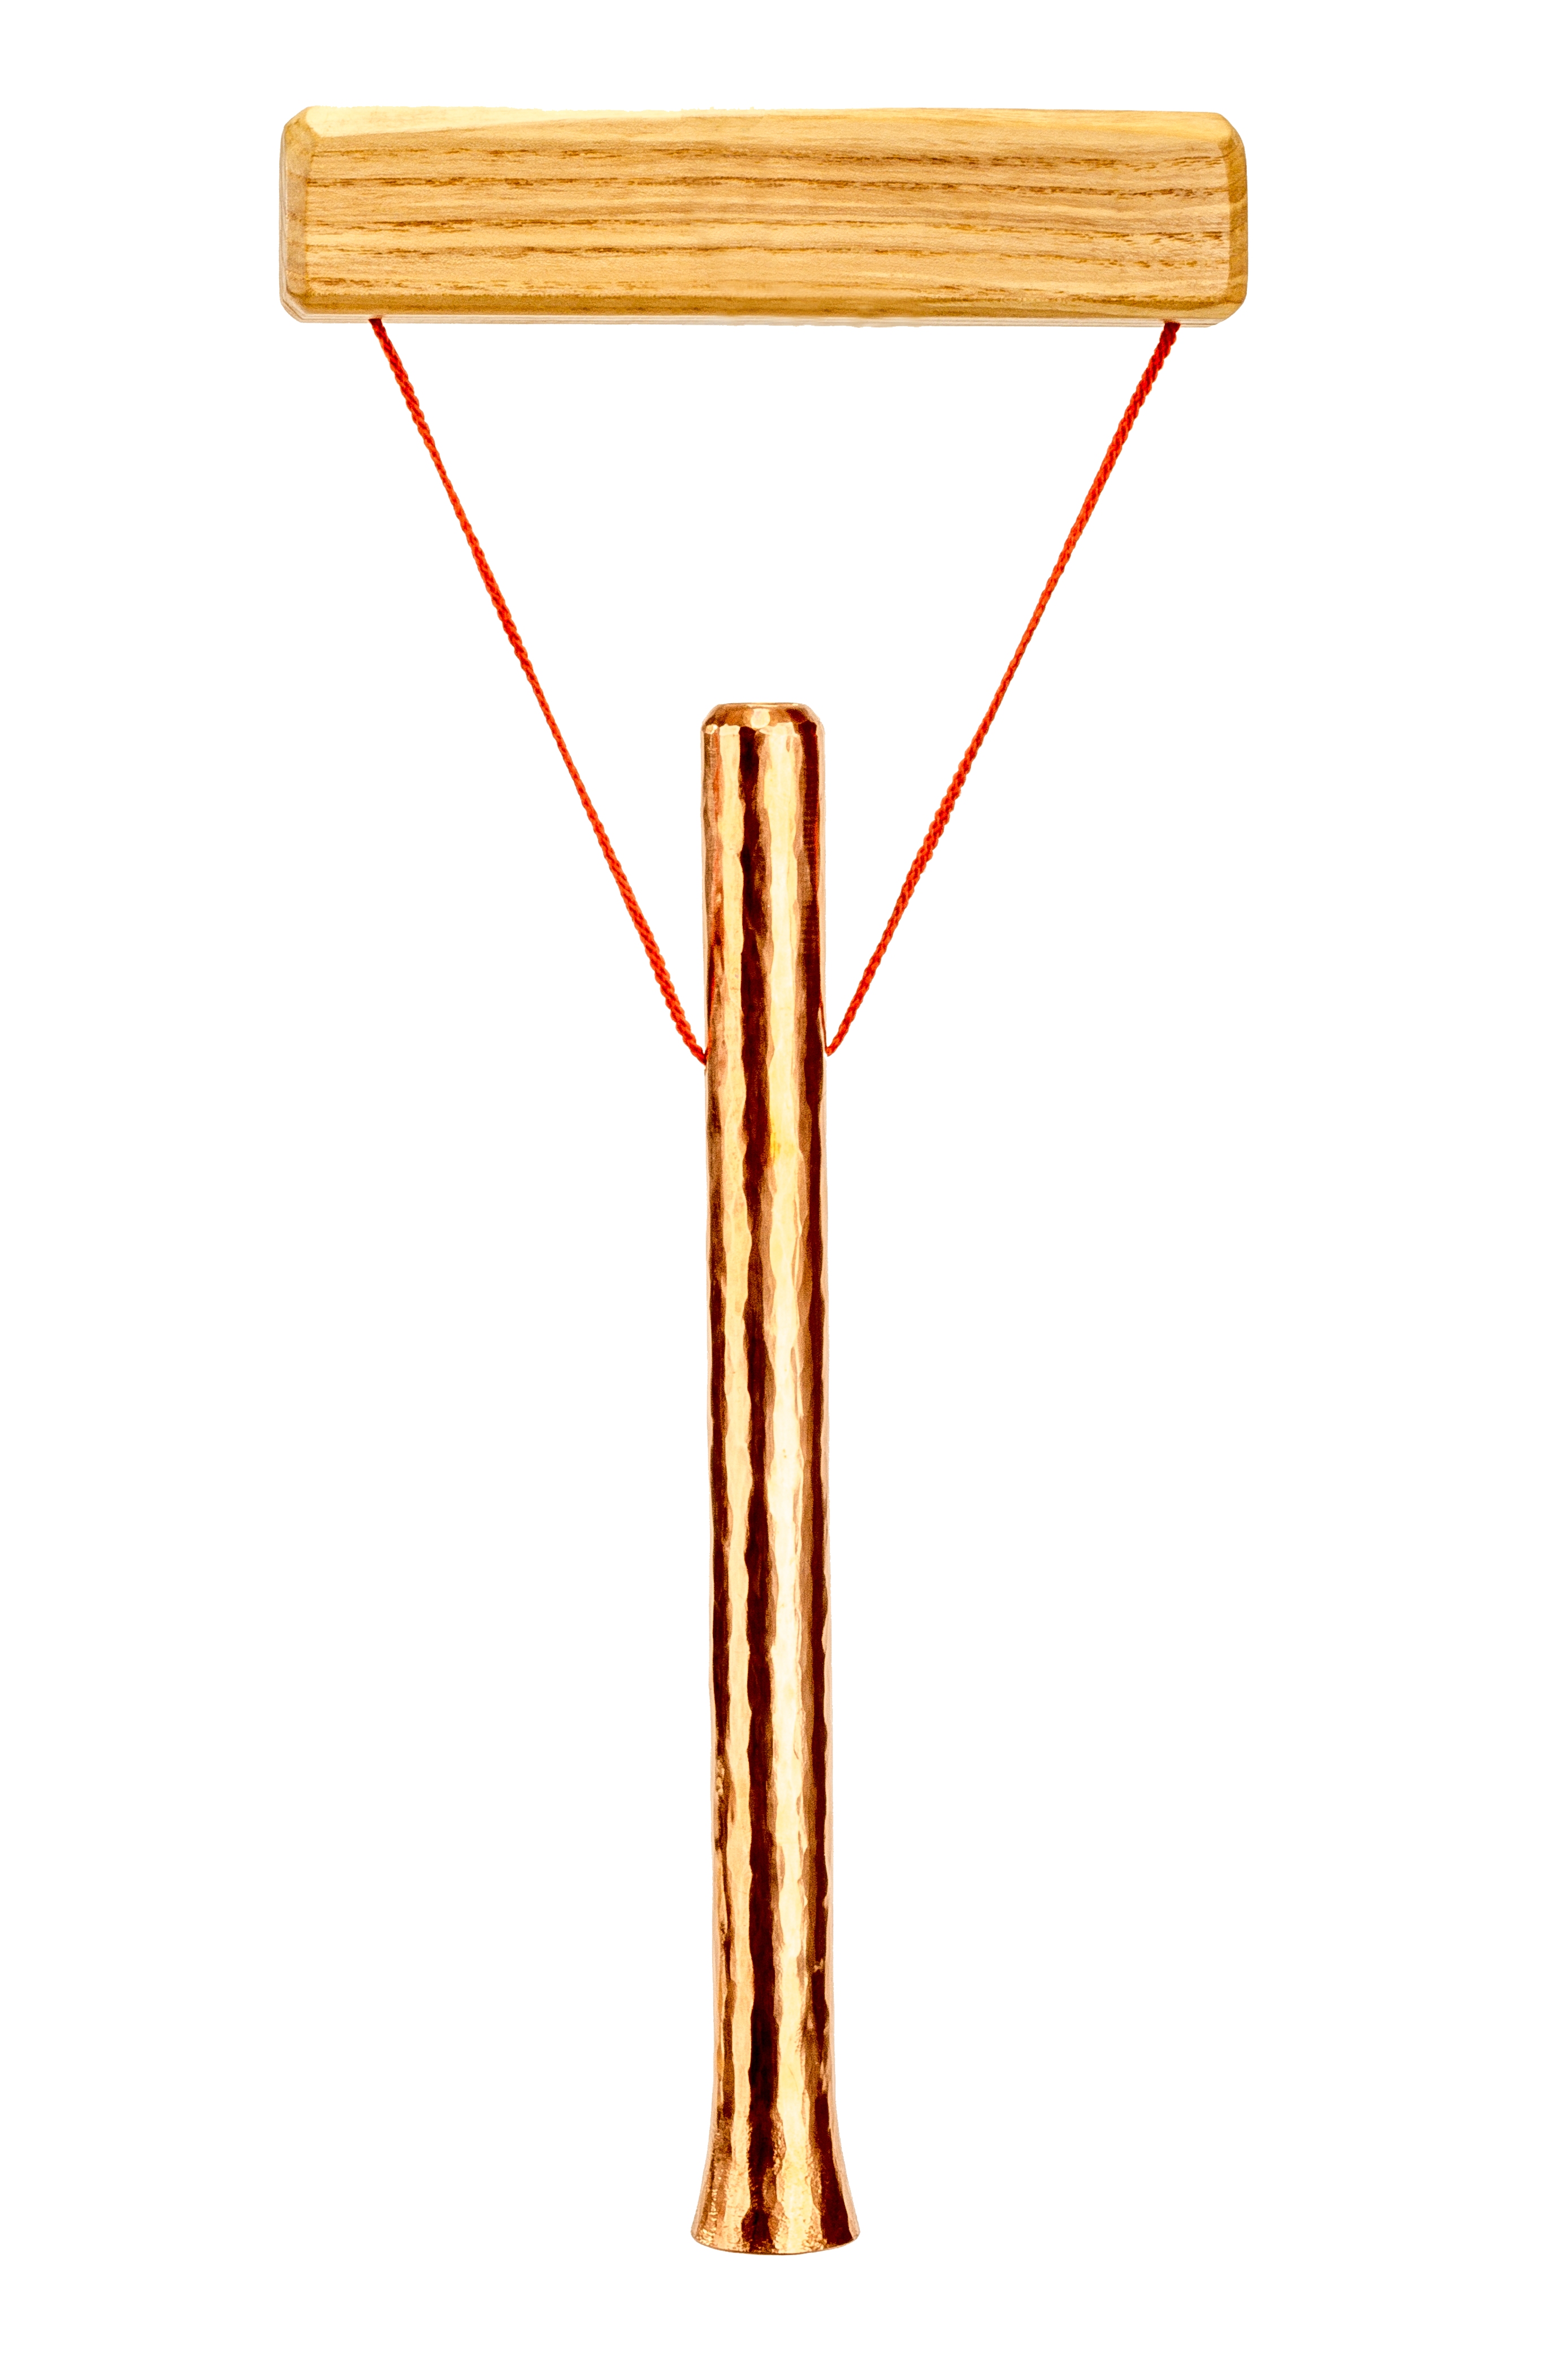 Röhrenglocke Ø18mm aus reinem Kupfer mit Handgriff aus Holz